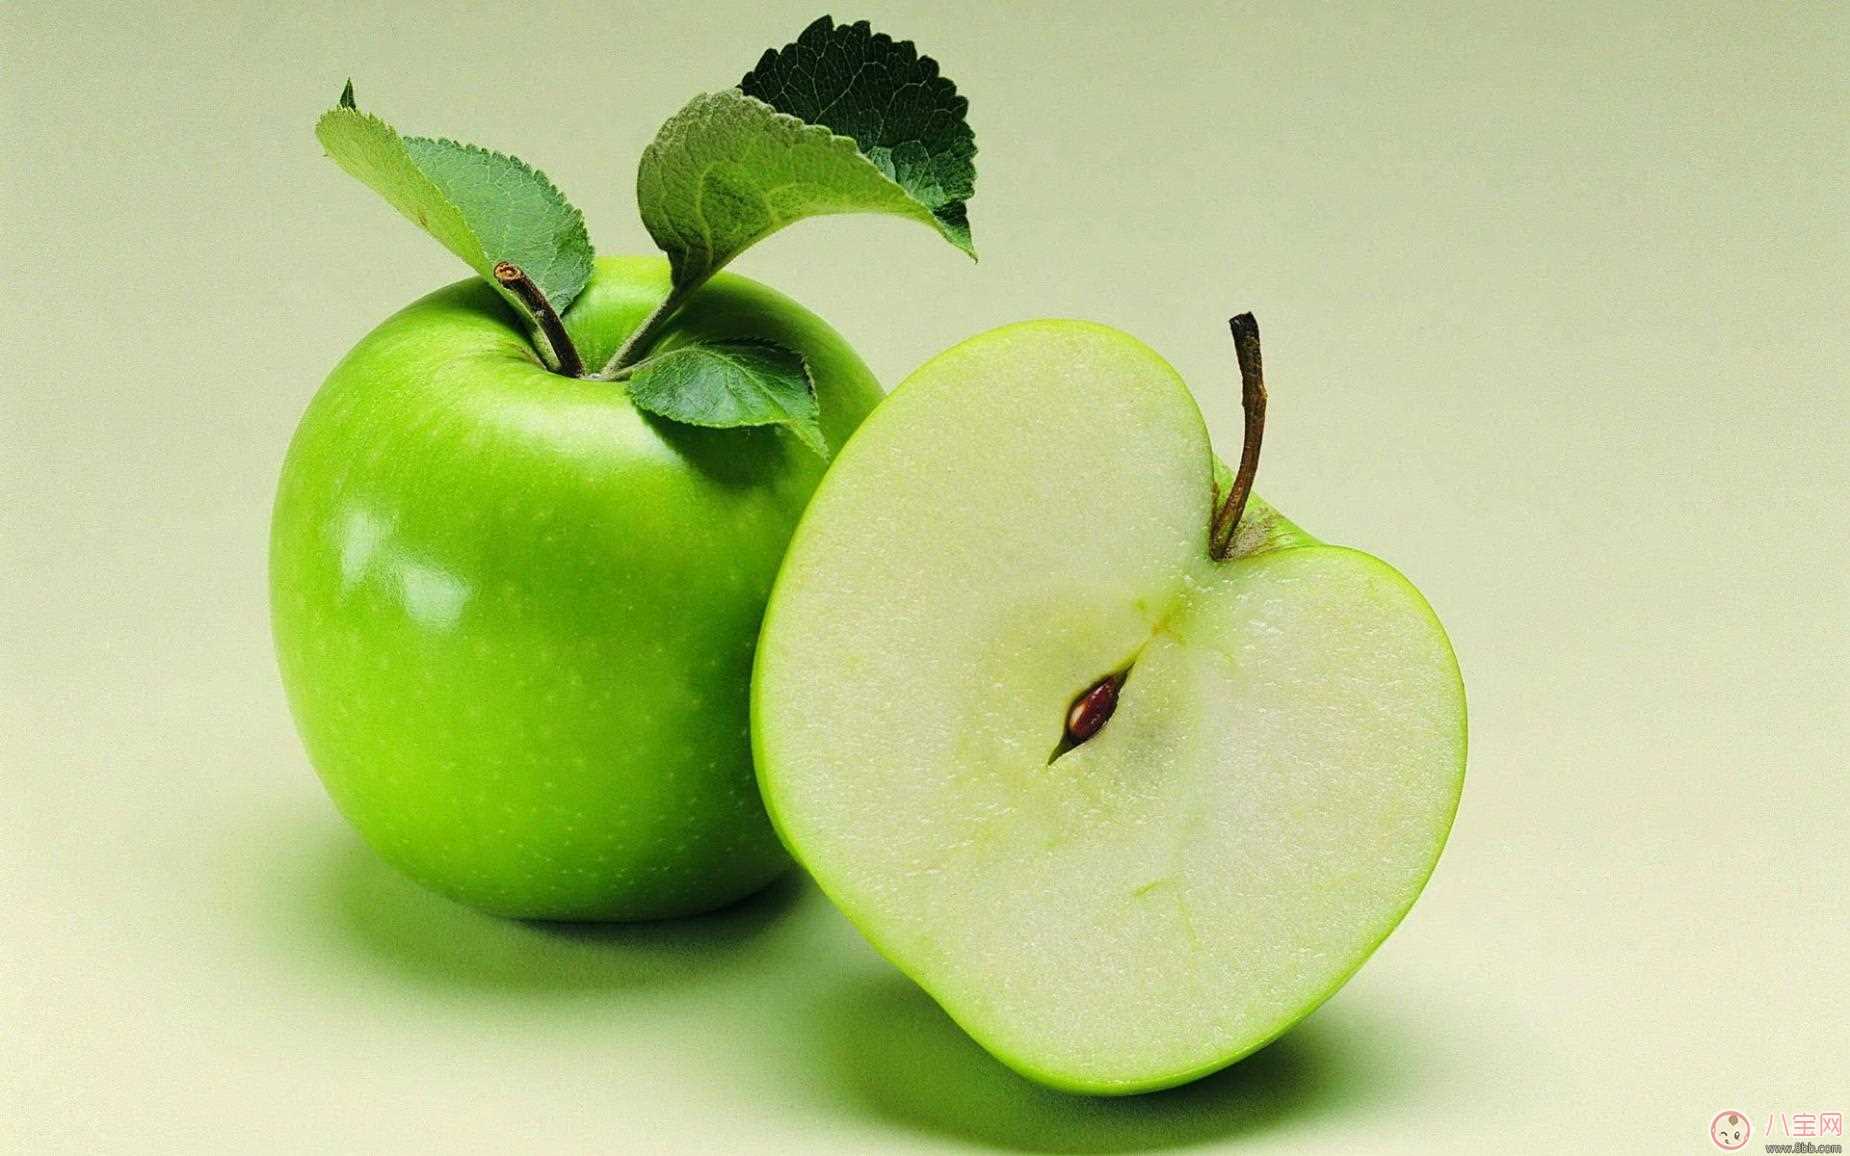 苹果应该这样吃你知道吗  吃苹果的最佳时间 